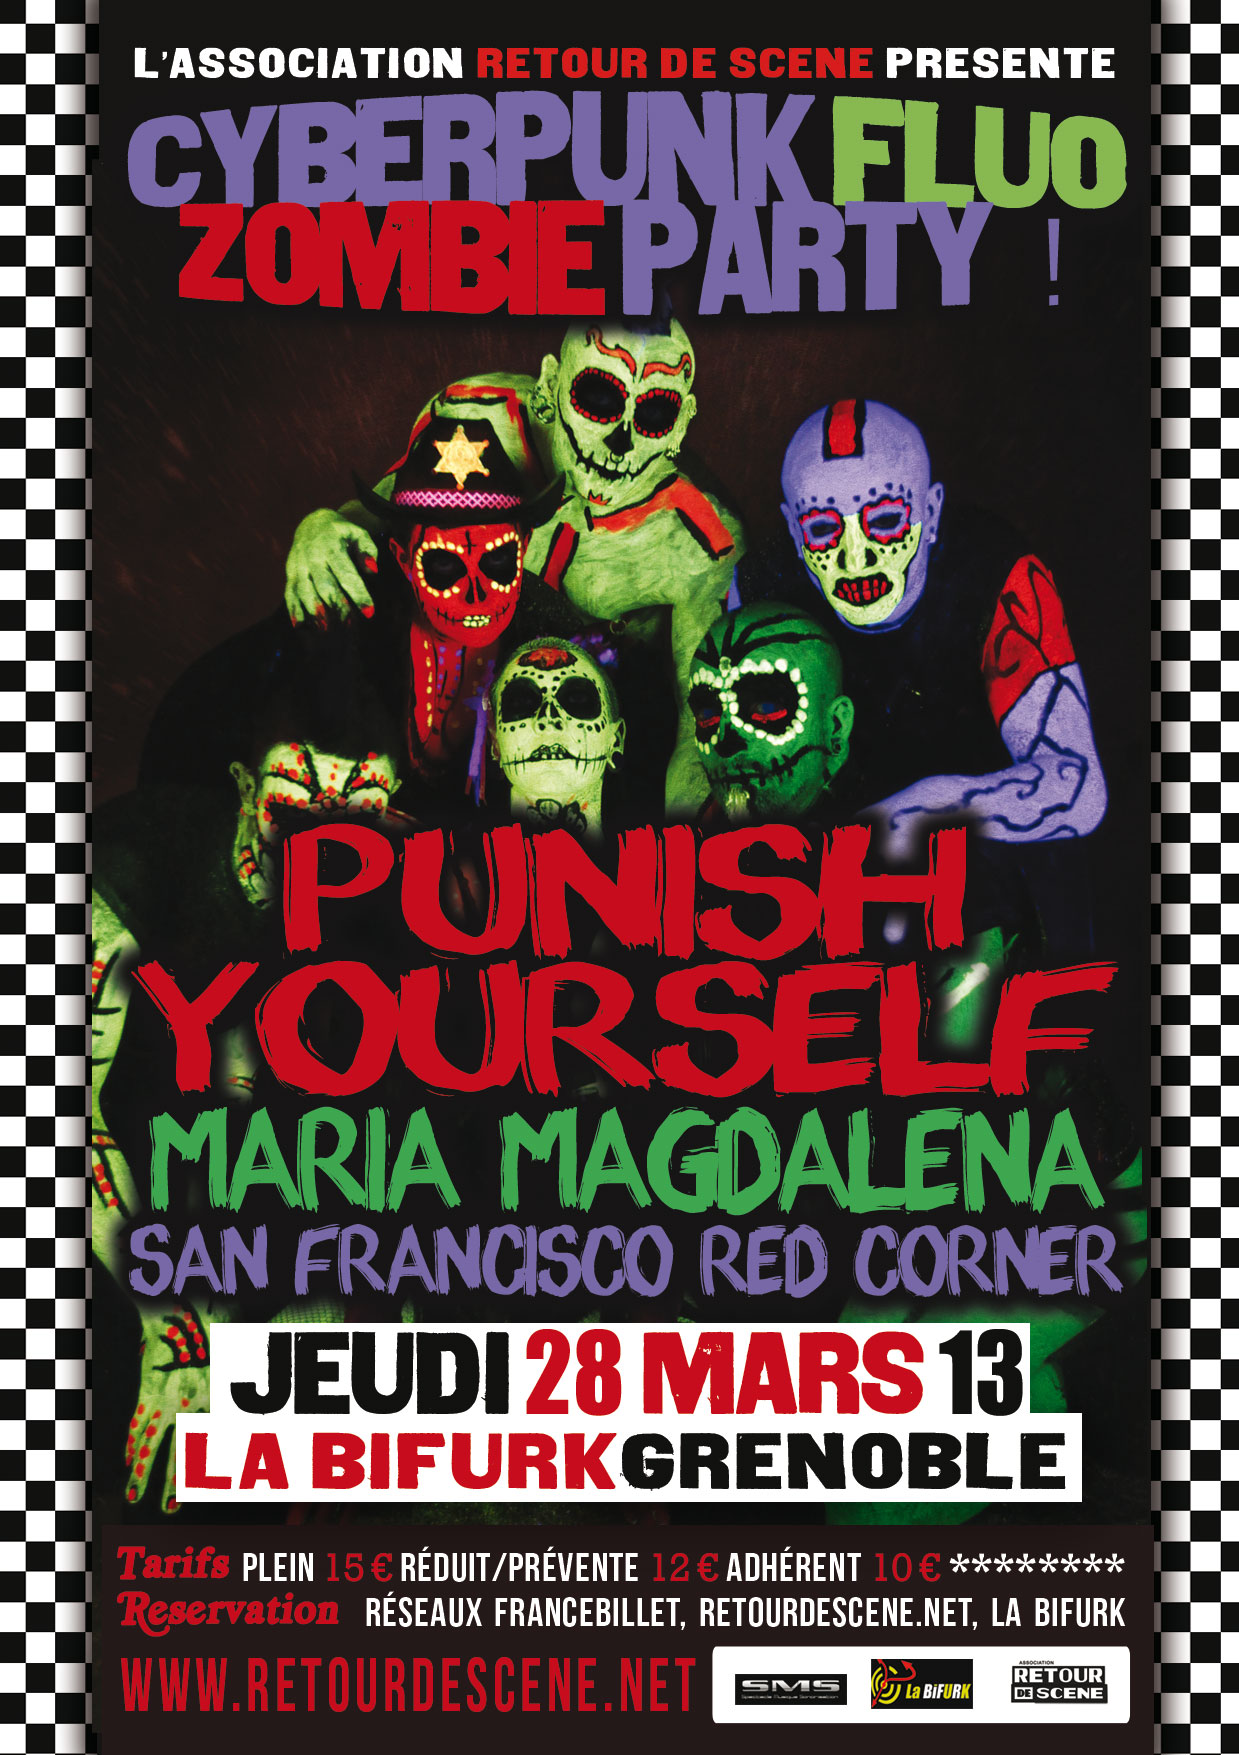 Cyberpunk Fluo Zombie Party - La Bifurk - 28/03/2013